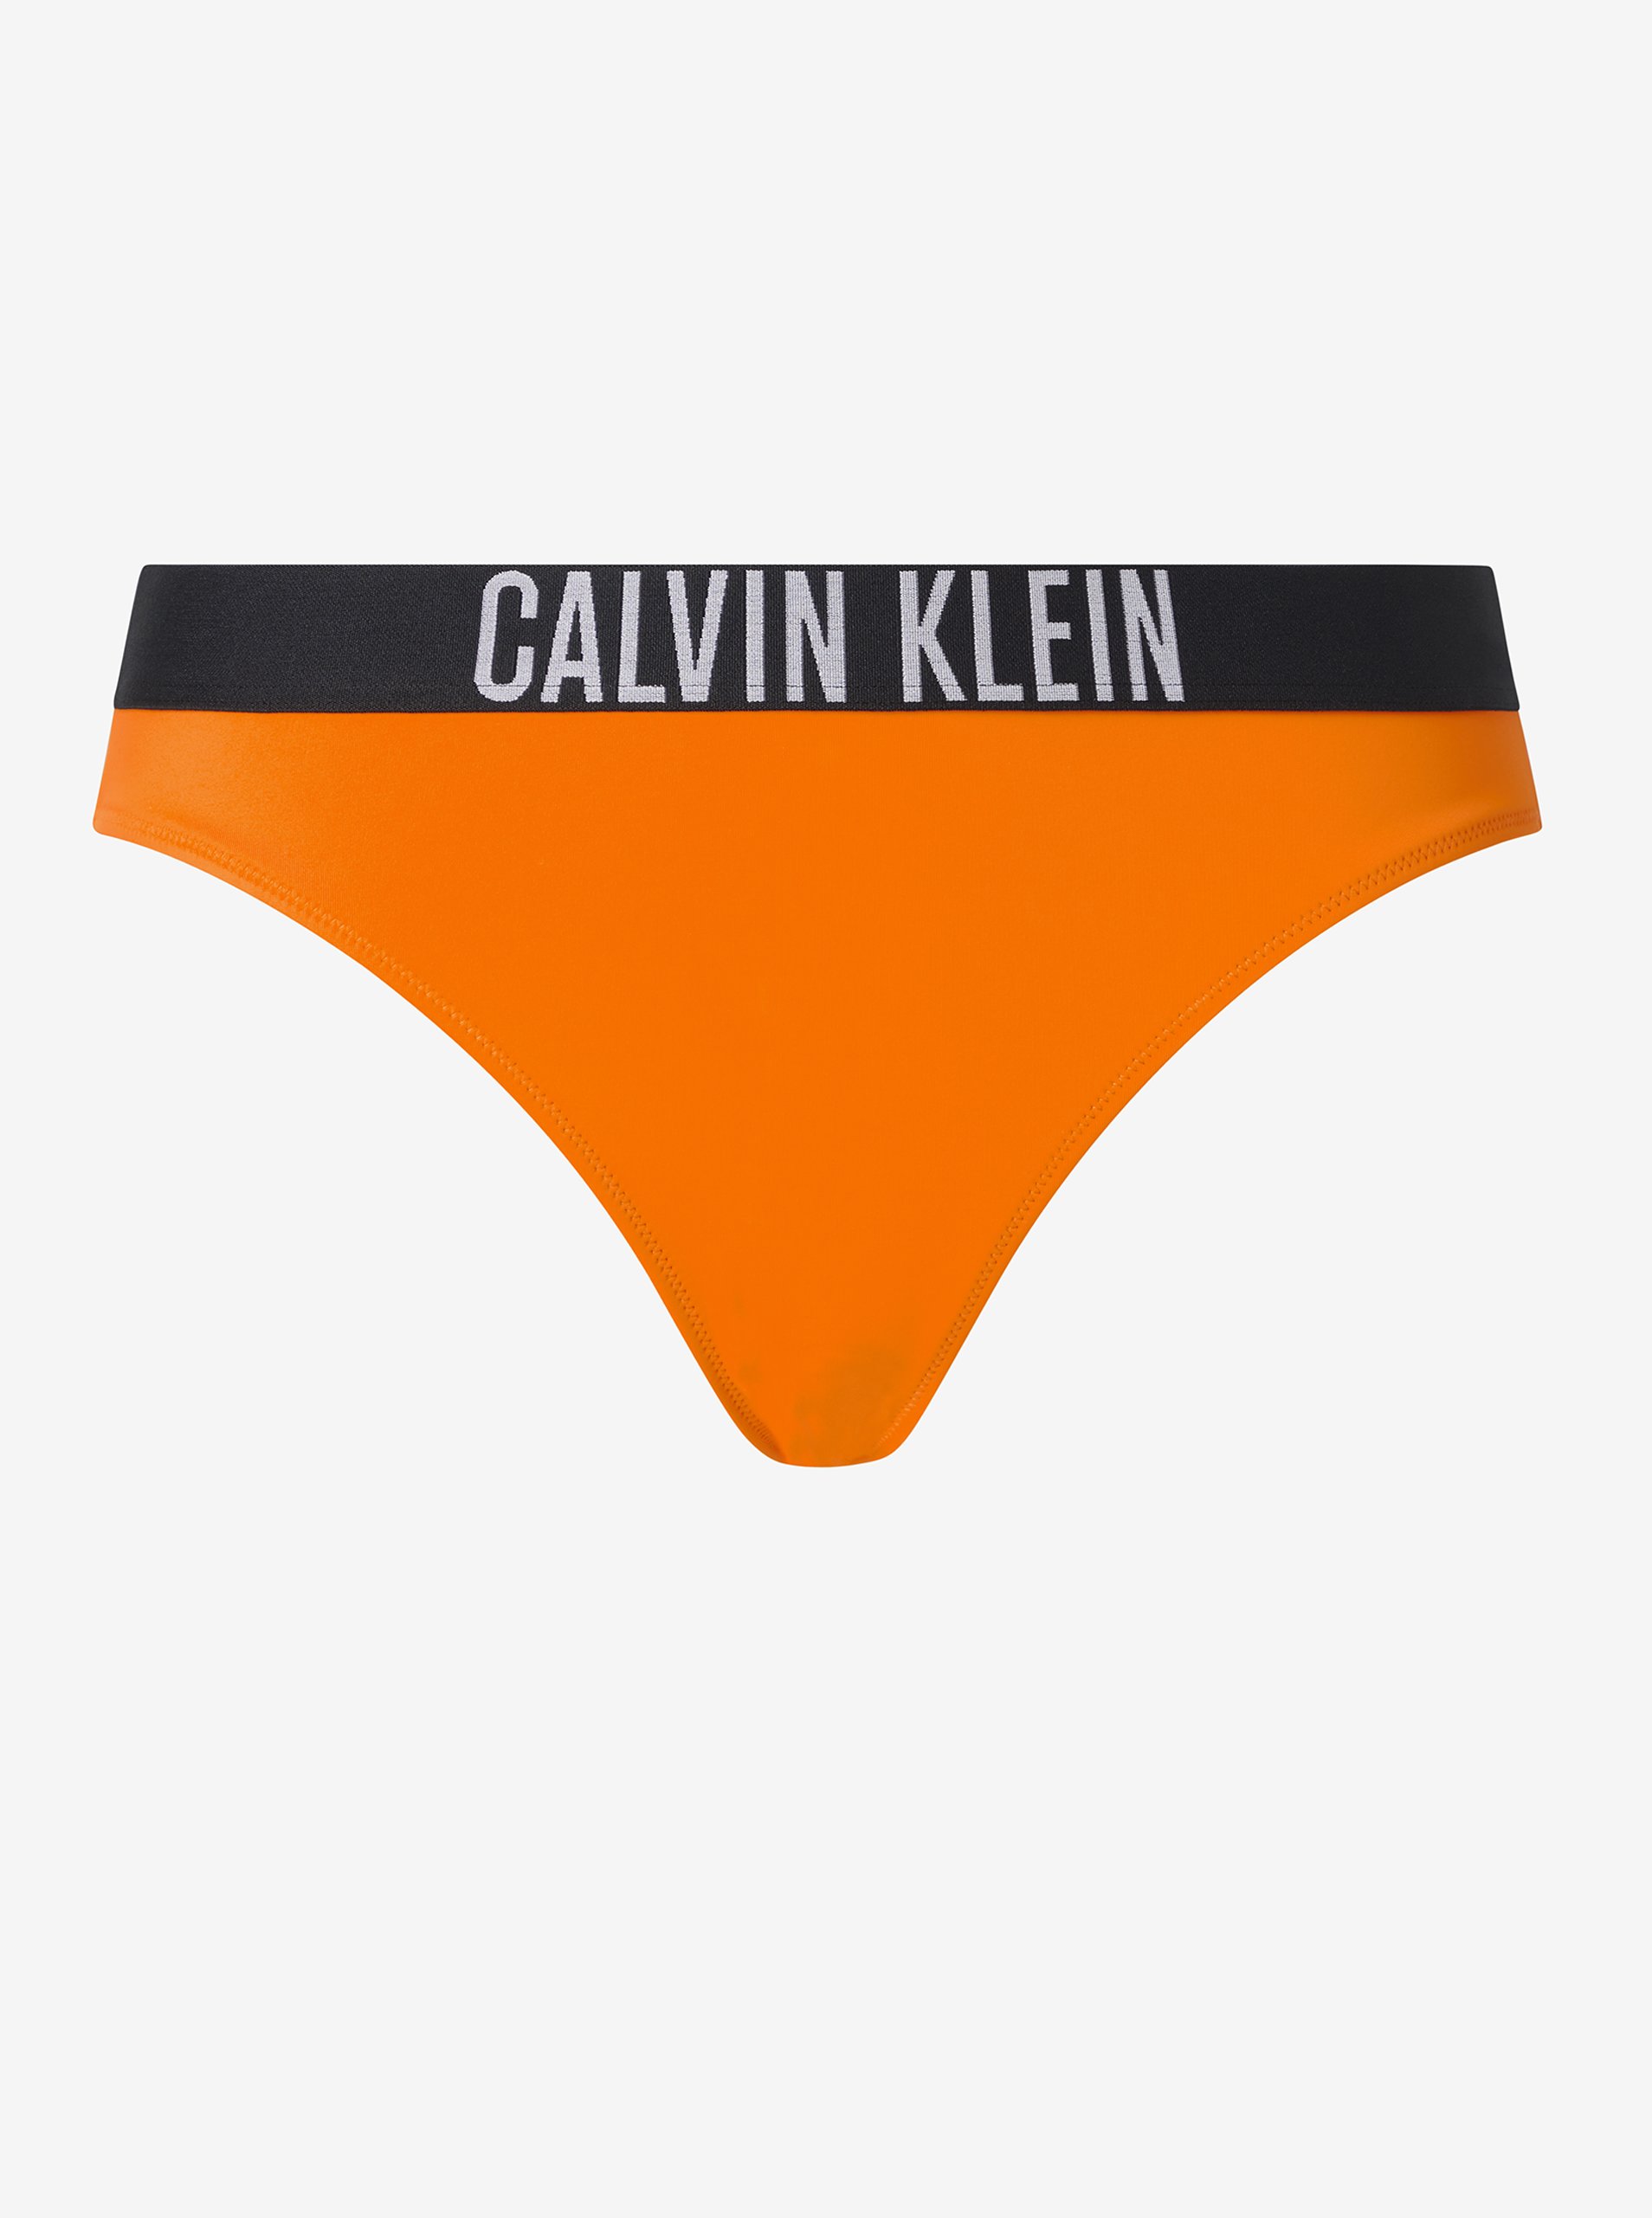 Lacno Oranžový dámsky spodný diel plaviek Calvin Klein